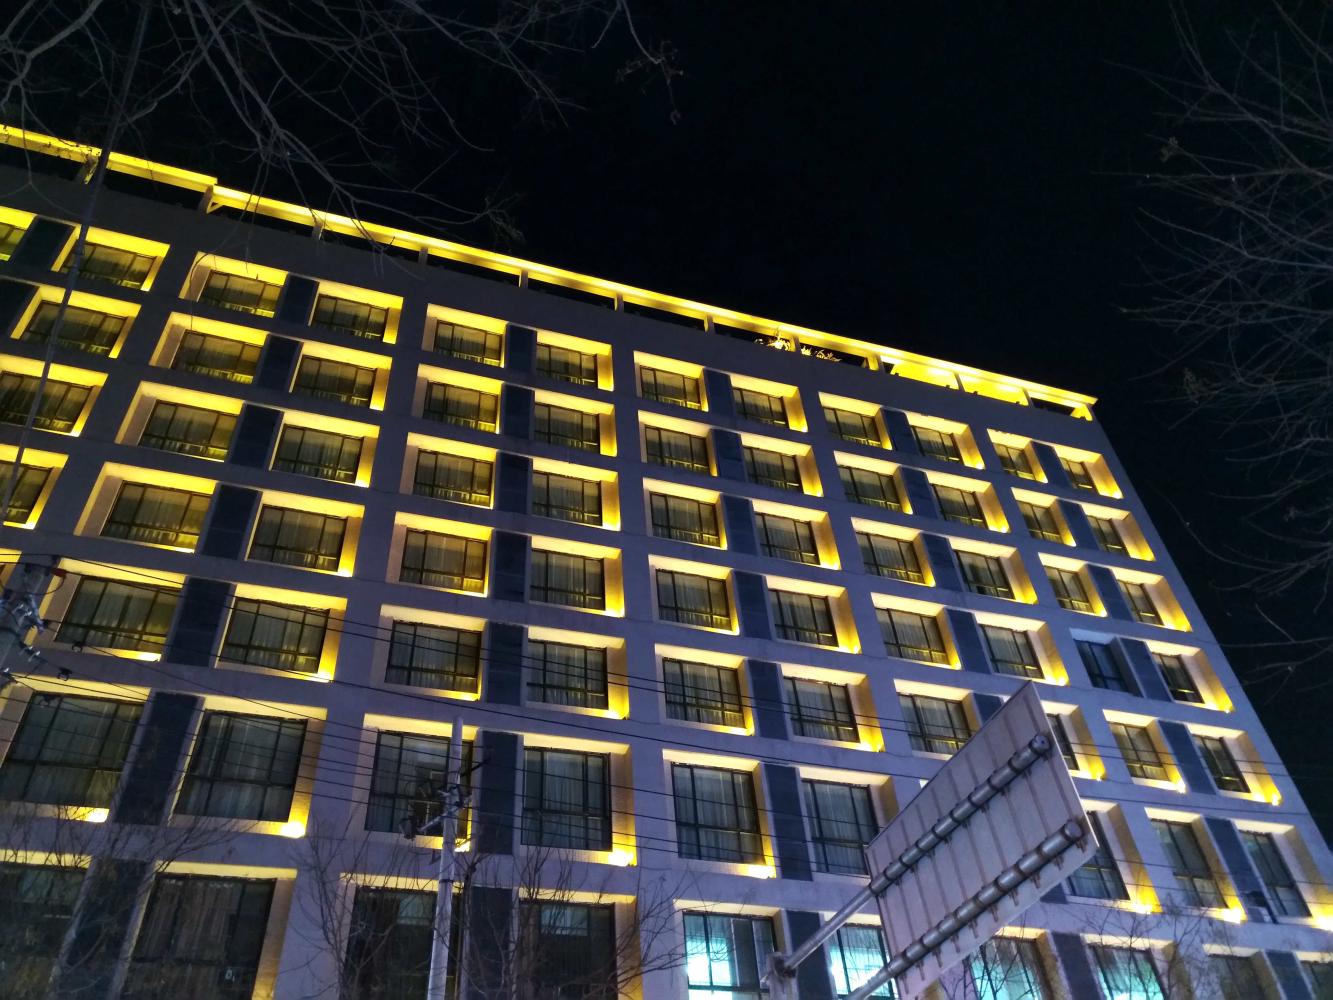 夜景模式拍摄酒店外墙部分,黄色的灯光整齐划一的抓取,角落里面的